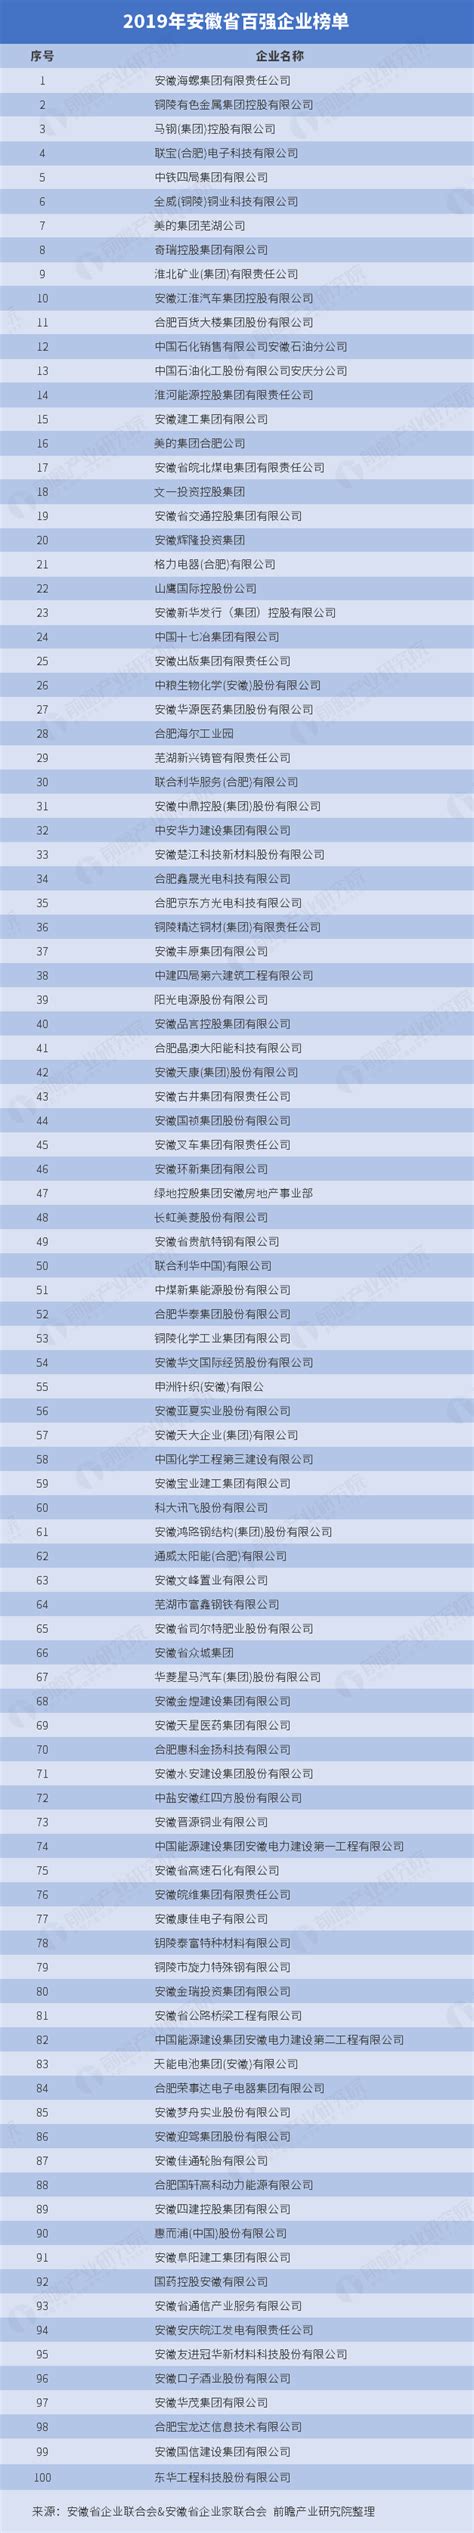 2019年安徽省百强企业榜单_研究报告 - 前瞻产业研究院